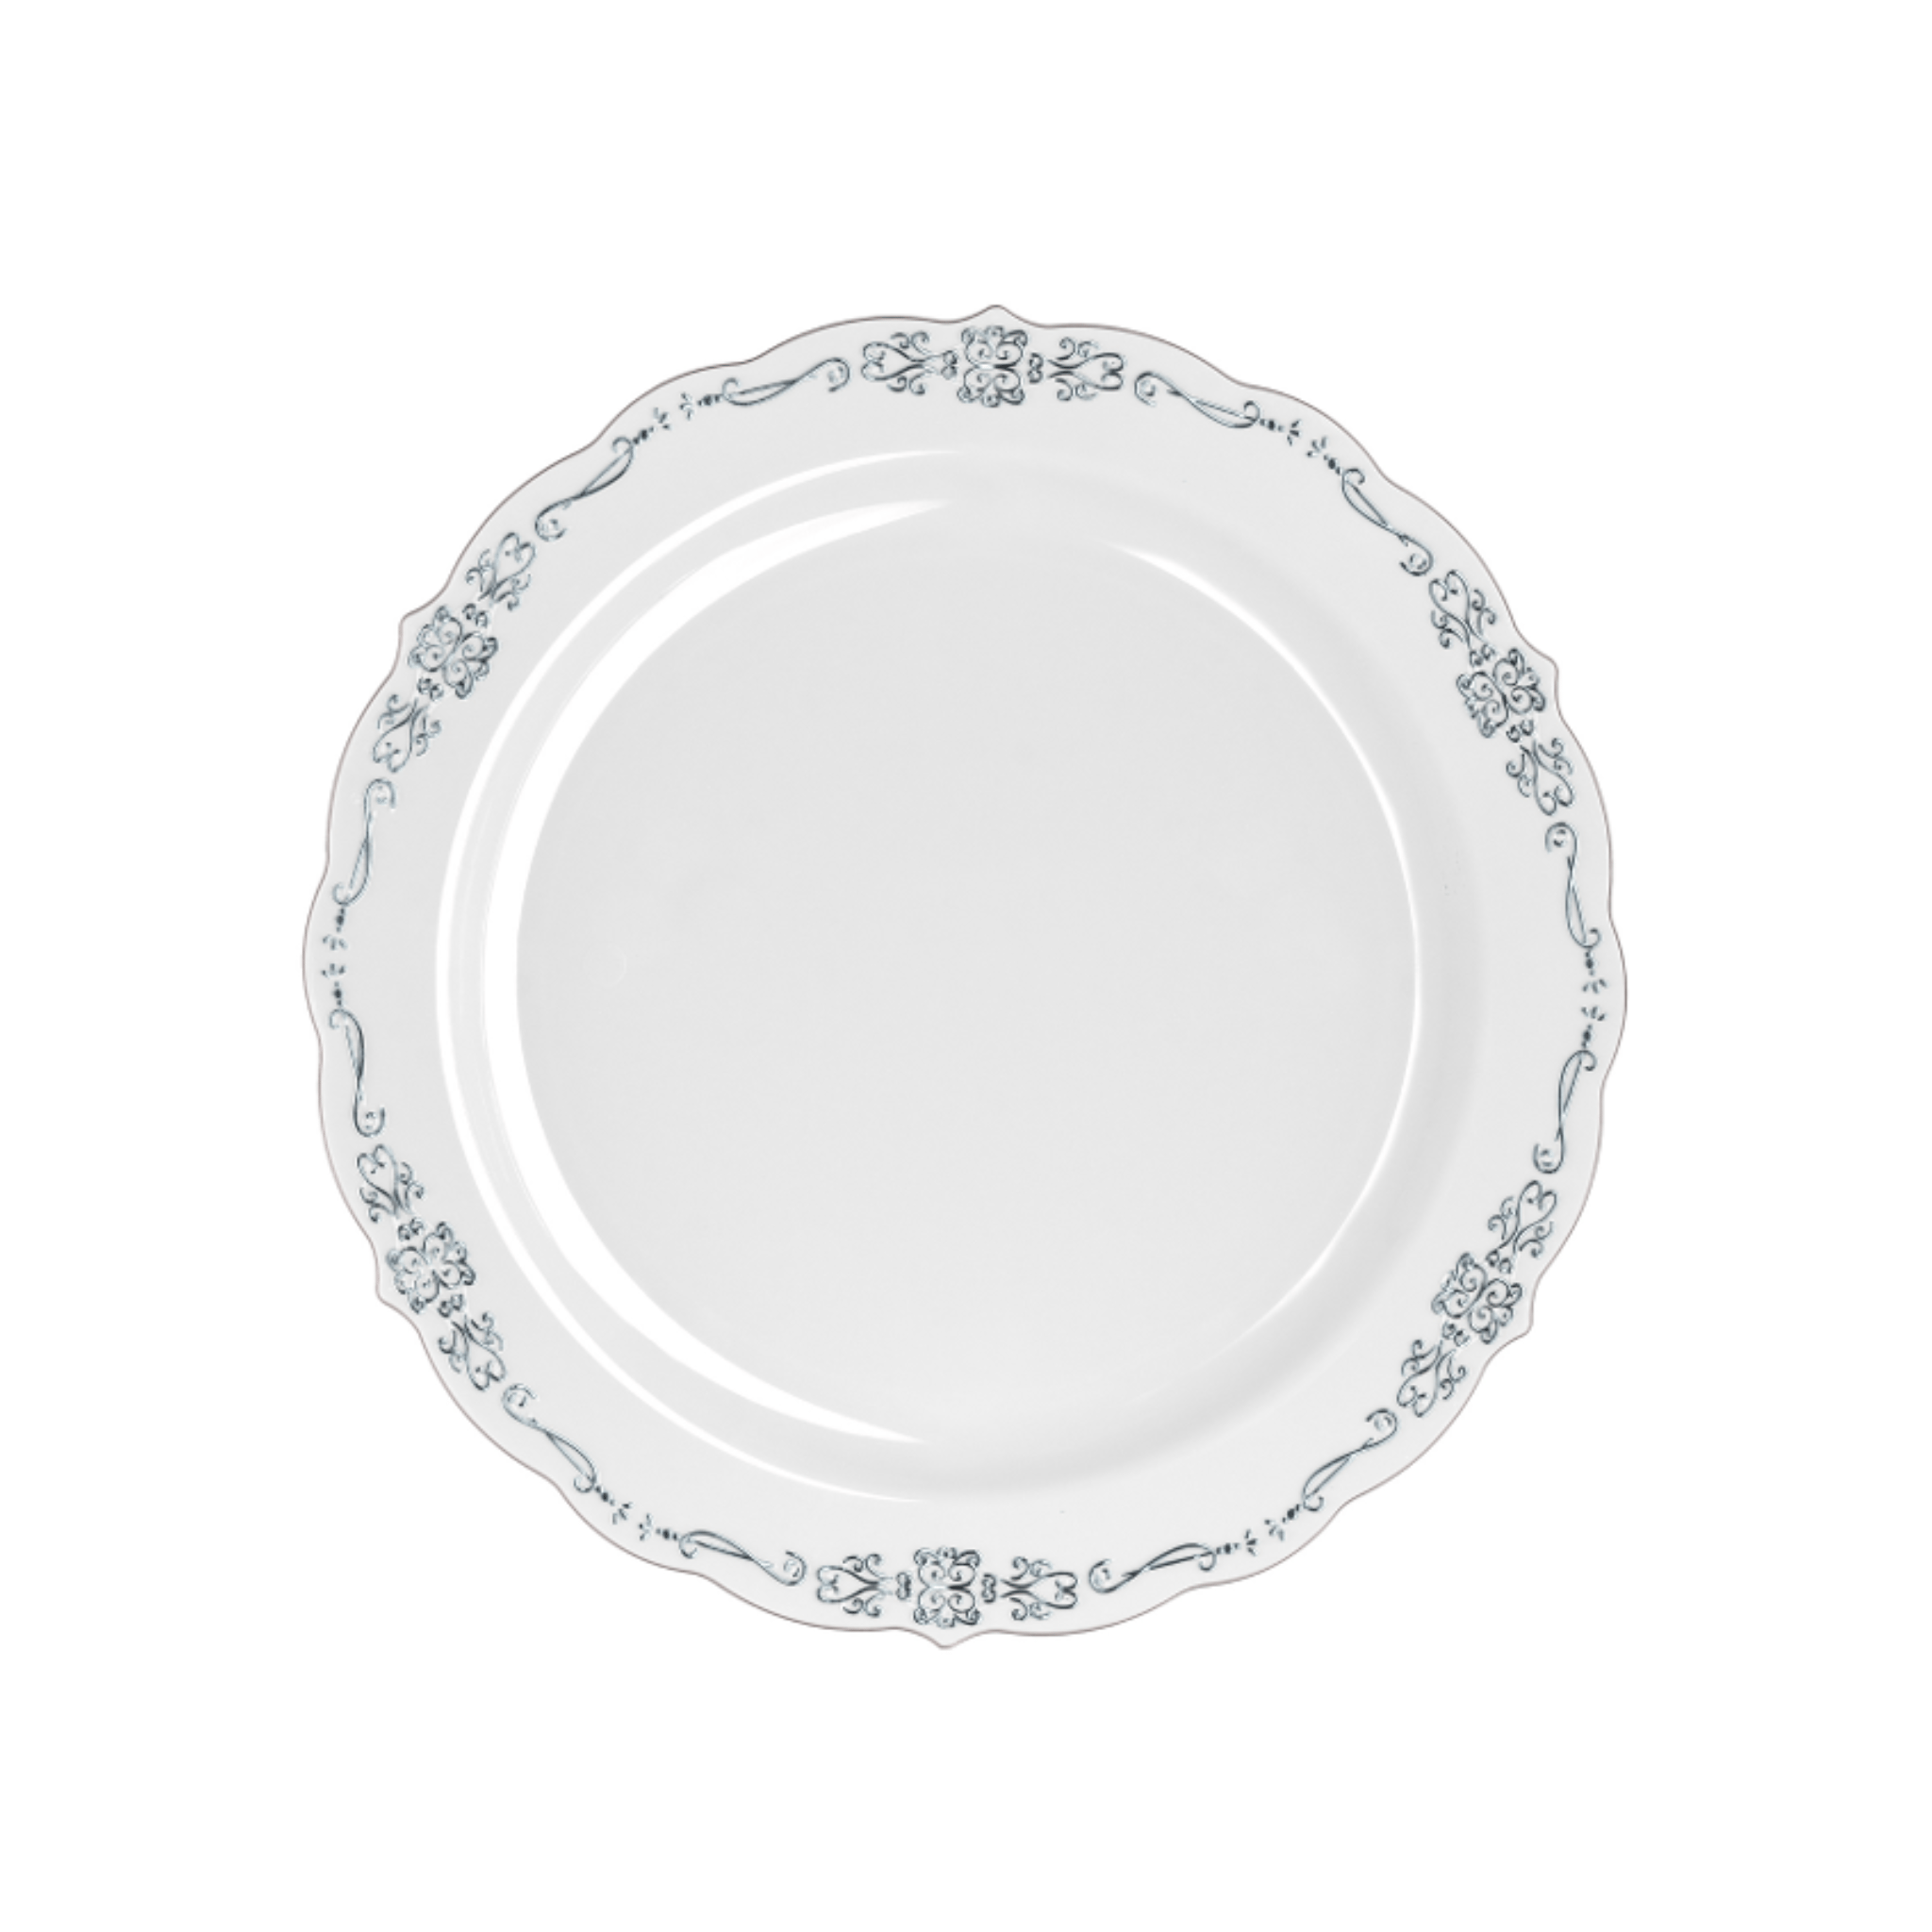 9" Gray / Silver Victorian Design Plastic Plates (120 Count)